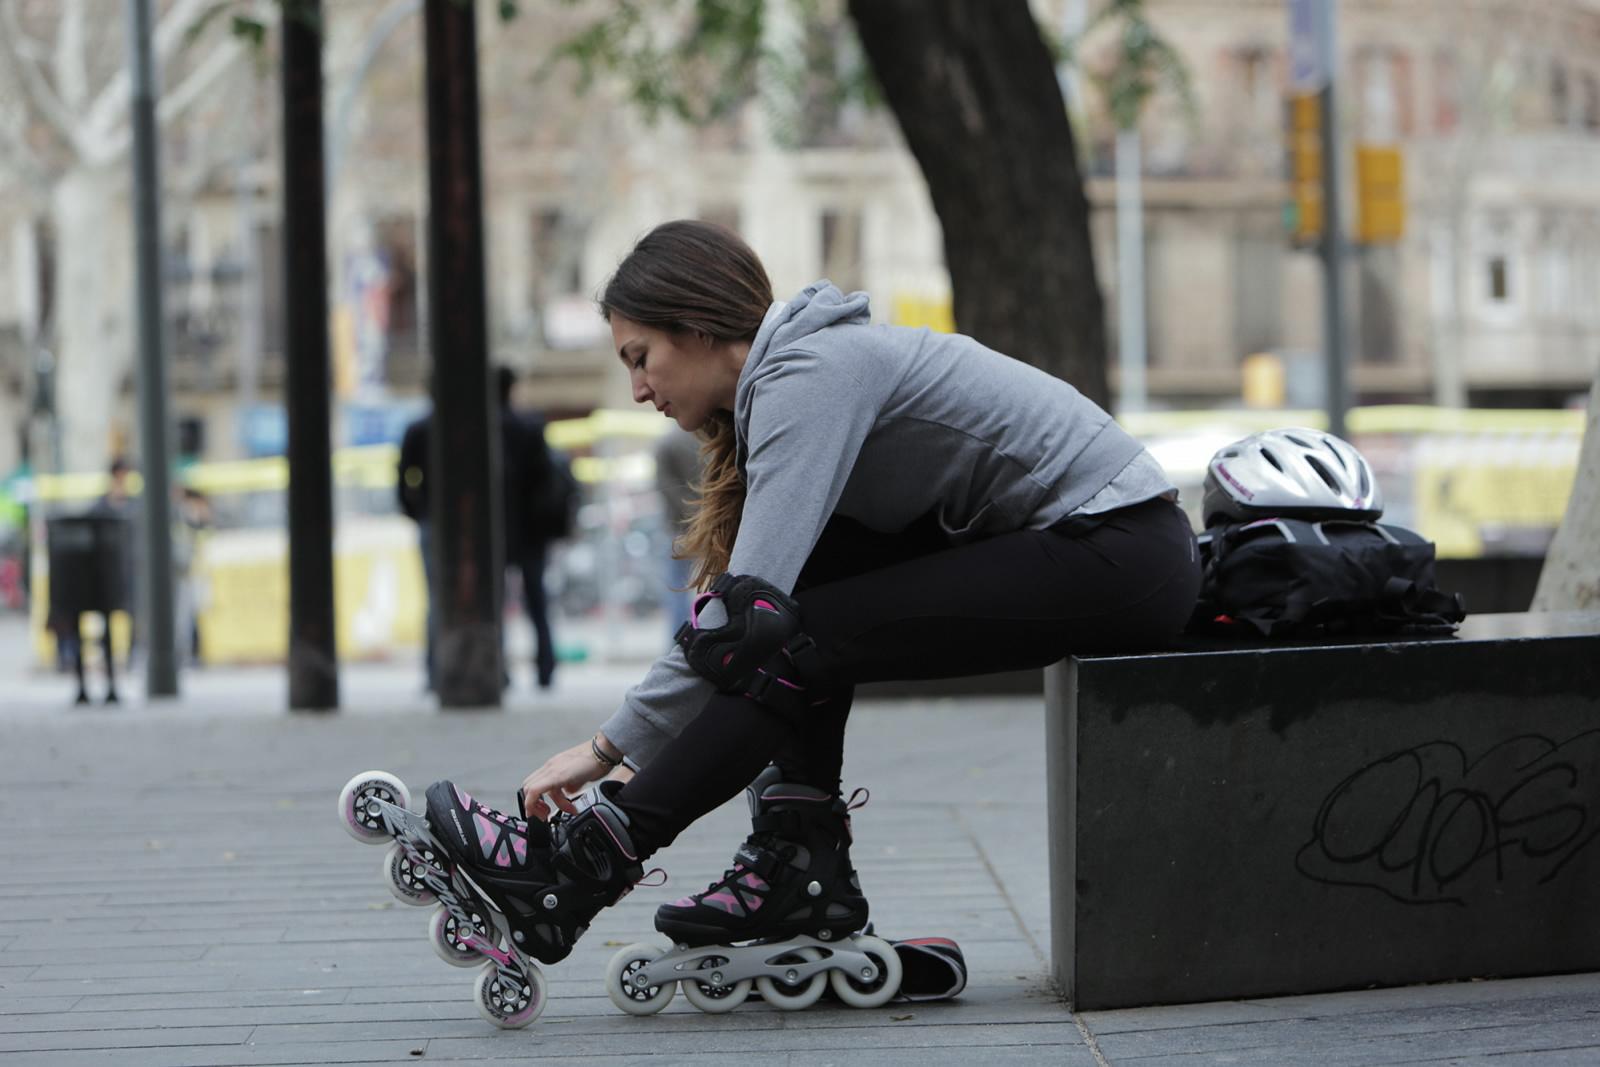 Girl & Skates